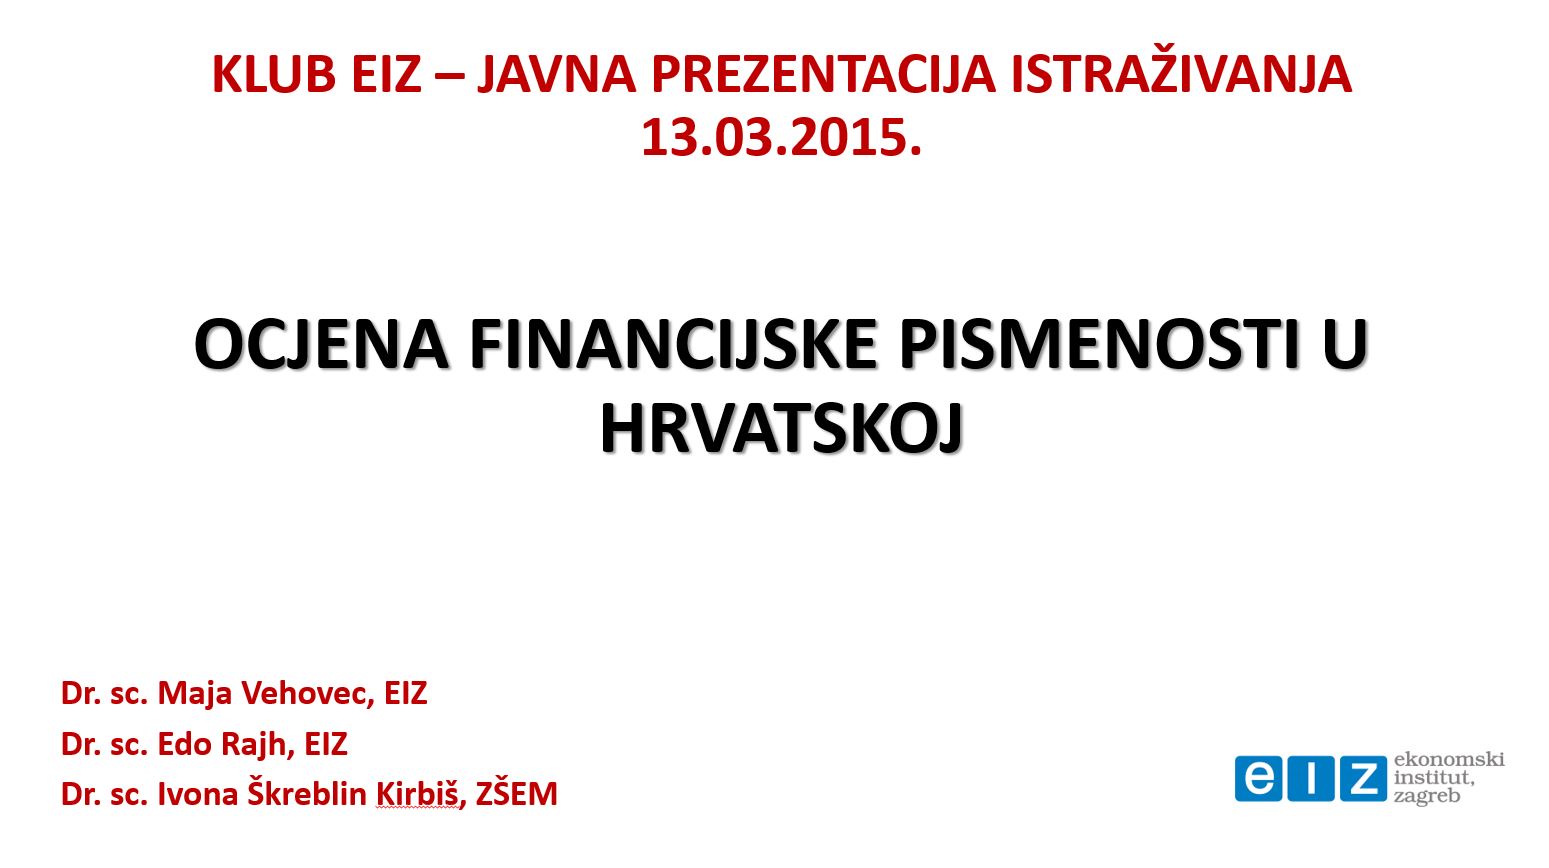 Ocjena financijske pismenosti u Hrvatskoj : testiranje regionalnih razlika – pilot istraživanje